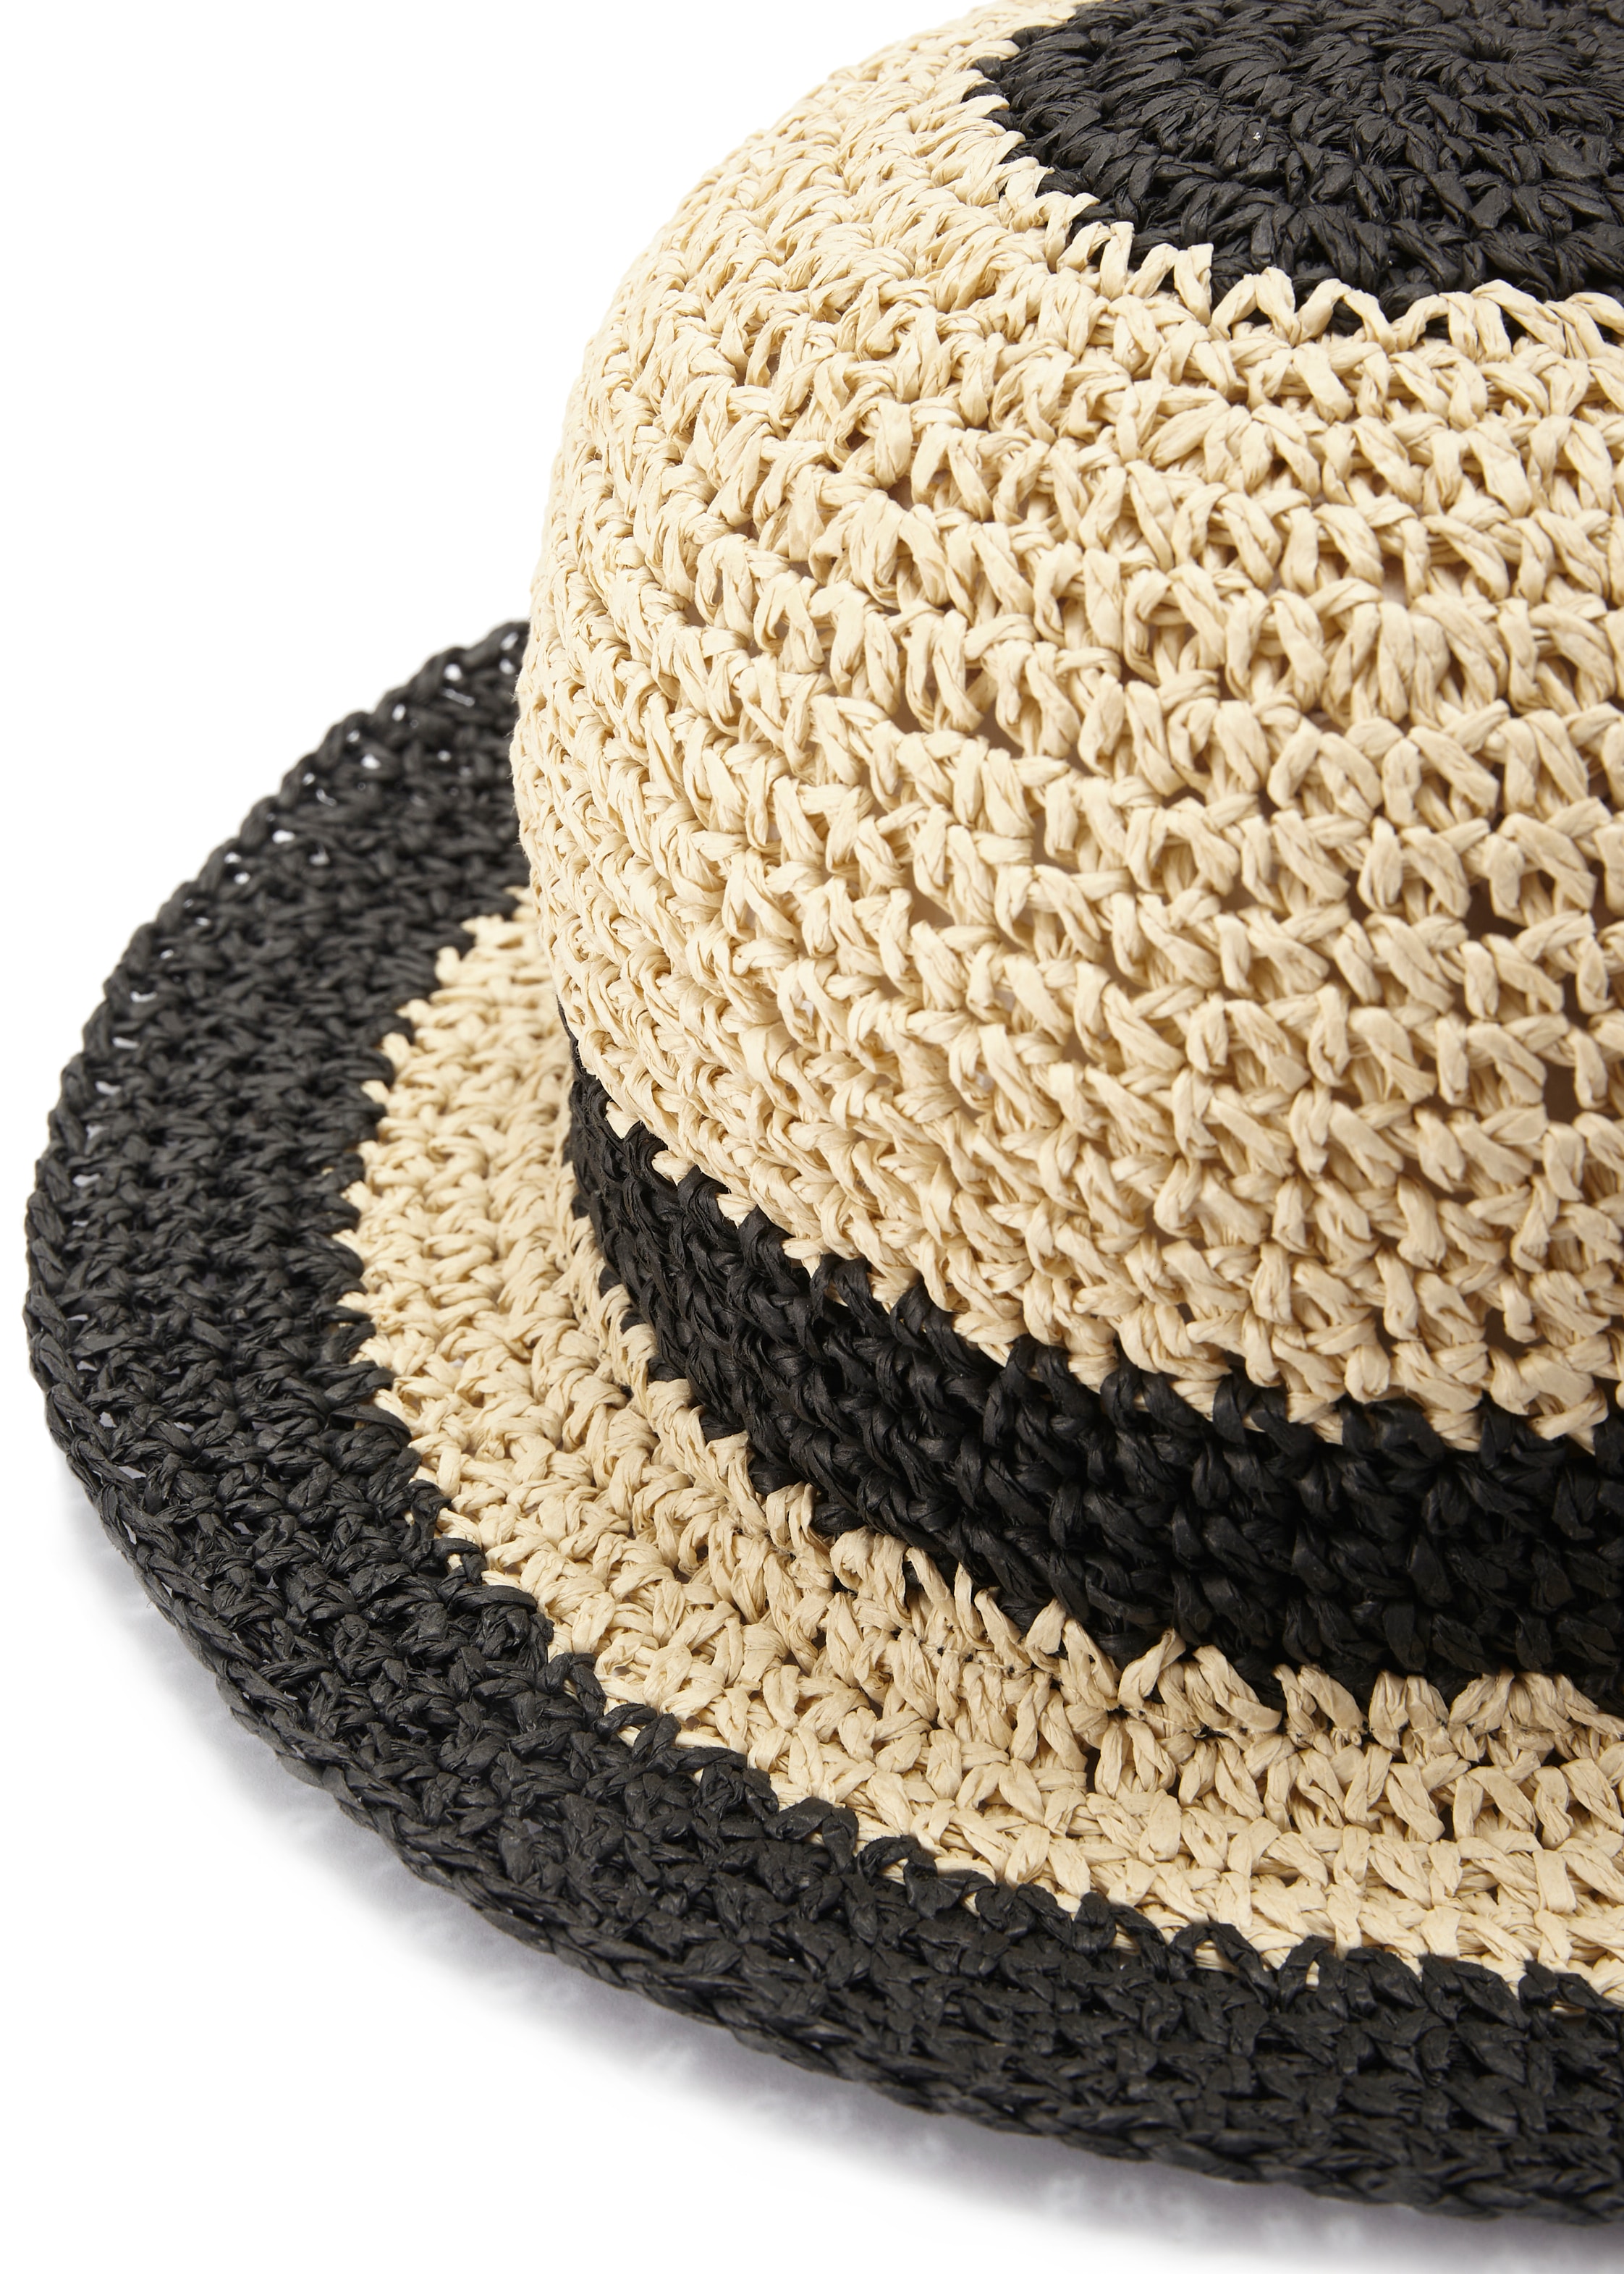 LASCANA Strohhut, Bucket Hat aus Stroh, Sommerhut, Kopfbedeckung VEGAN  online kaufen | UNIVERSAL